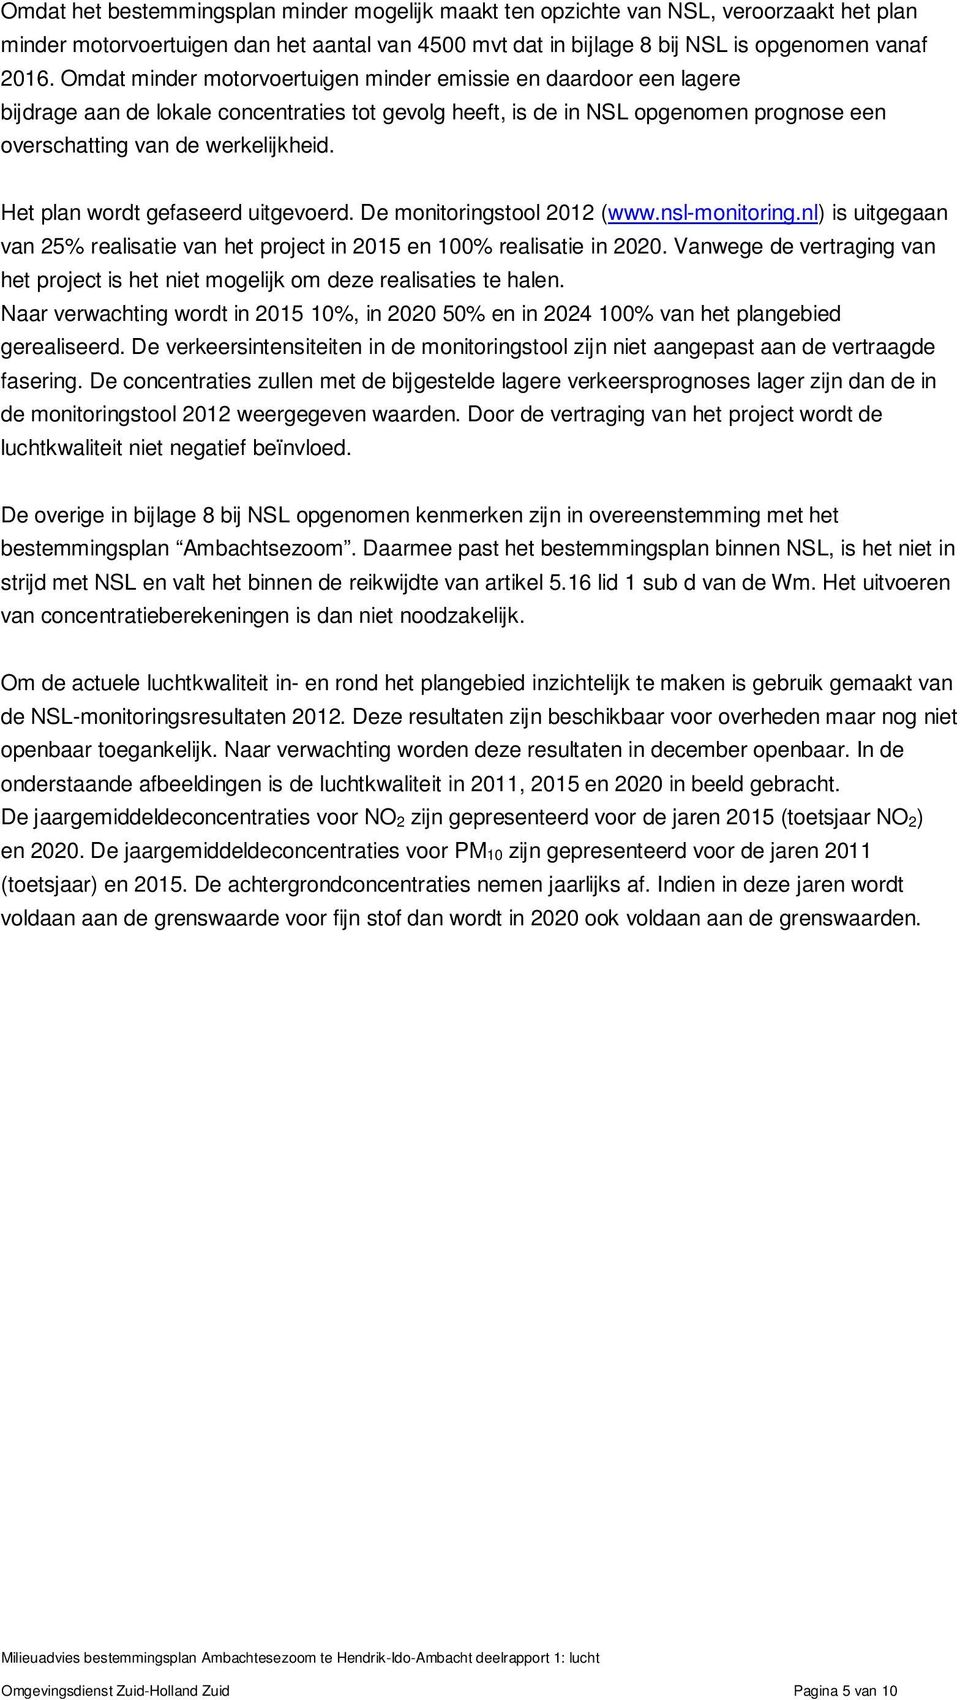 Het plan wordt gefaseerd uitgevoerd. De monitoringstool 2012 (www.nsl-monitoring.nl) is uitgegaan van 25% realisatie van het project in 2015 en 100% realisatie in 2020.